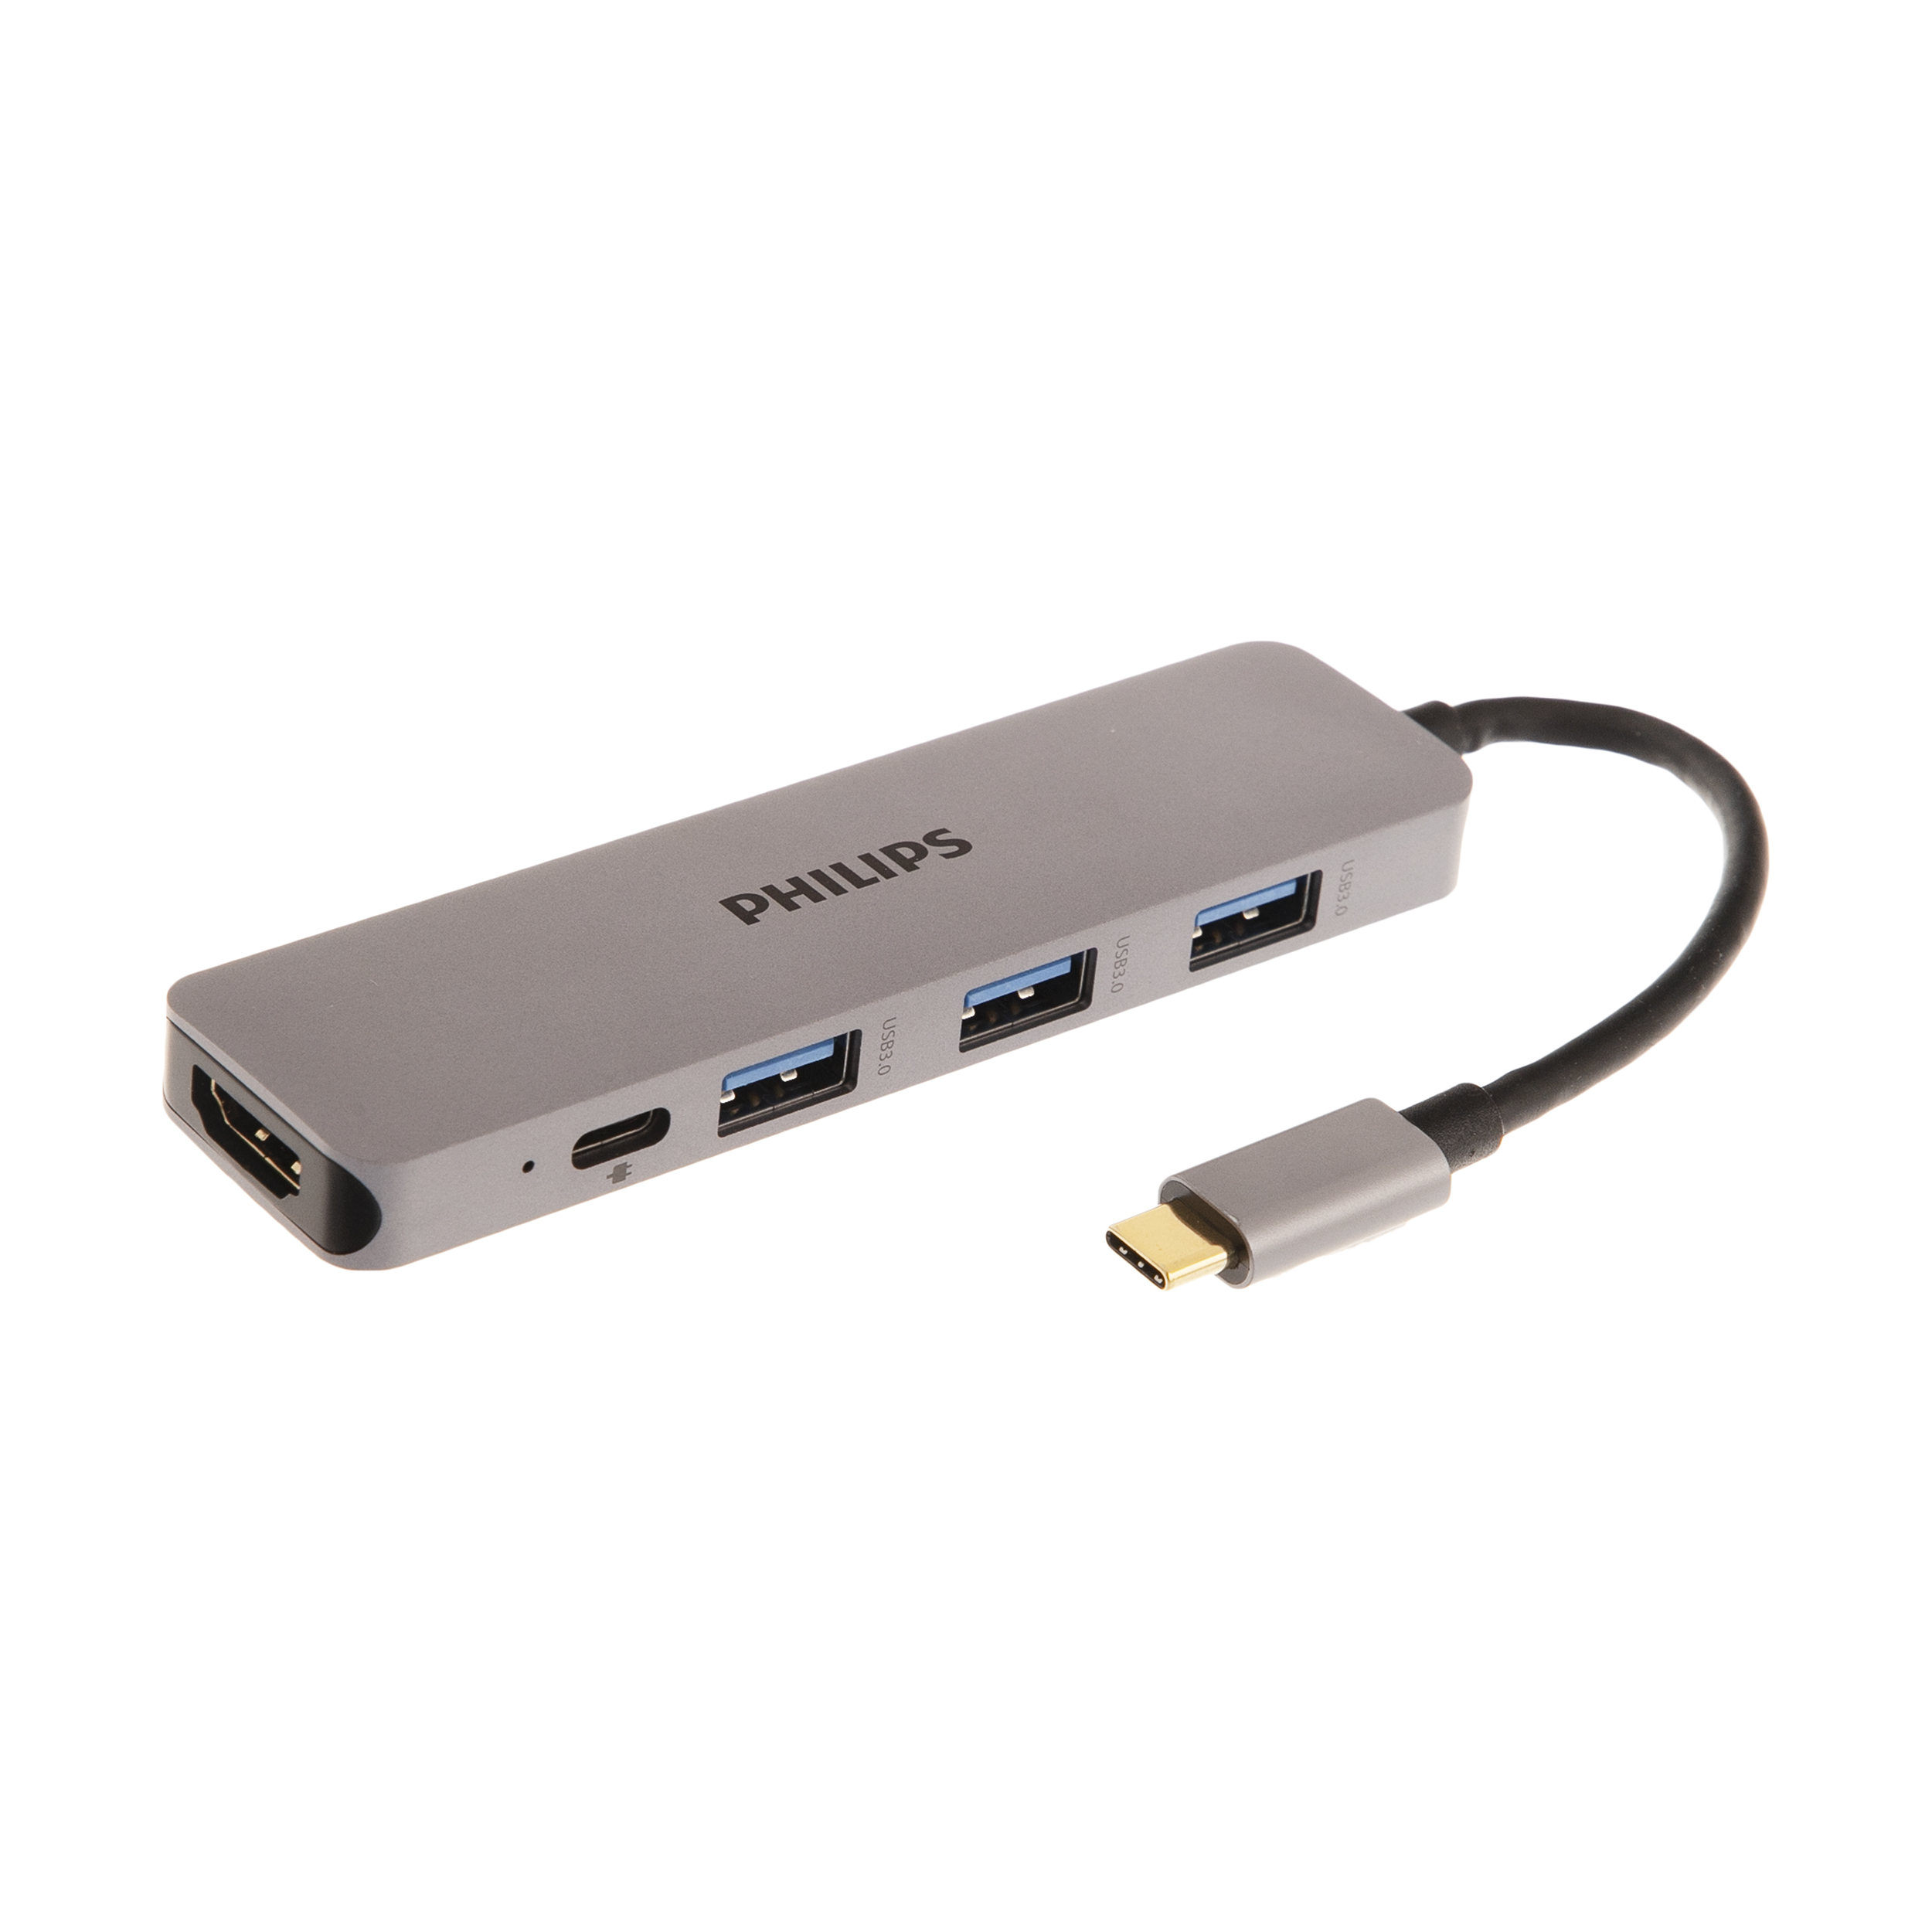 هاب 5 پورت USB-C فیلیپس مدل SWR1608I/93